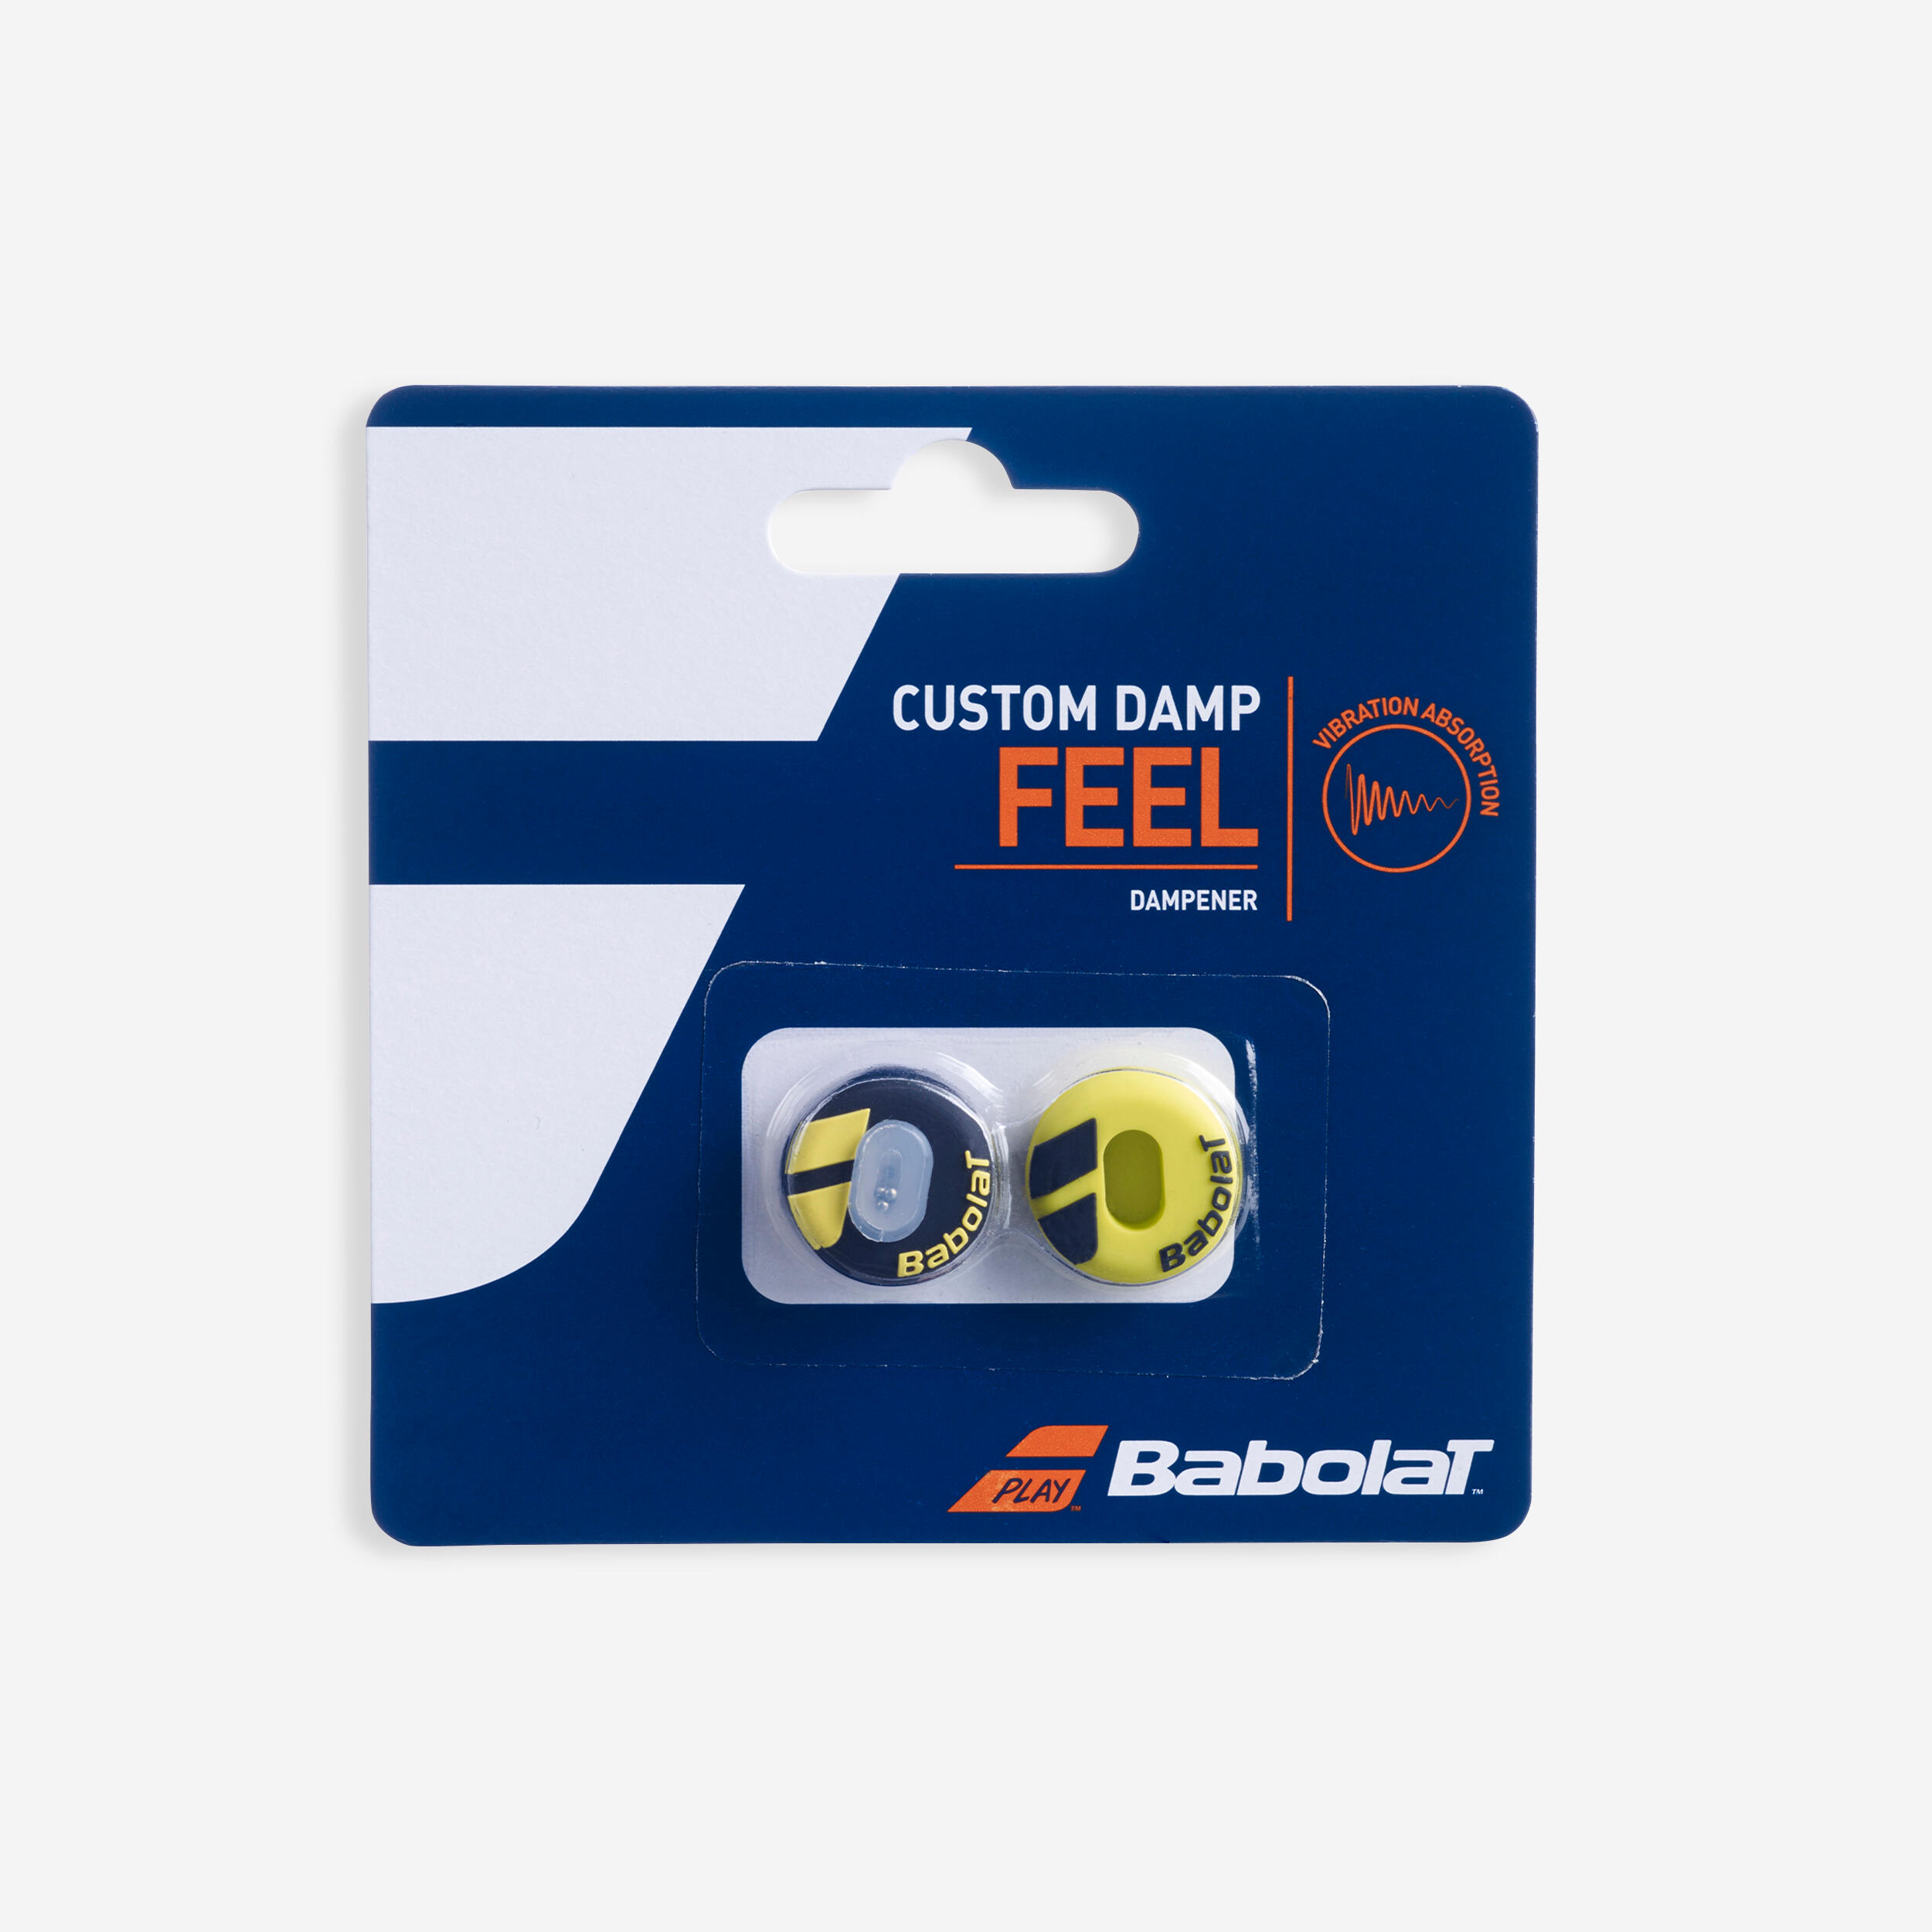 BABOLAT Tennis Dampener Custom Damp Aero - Black/Yellow